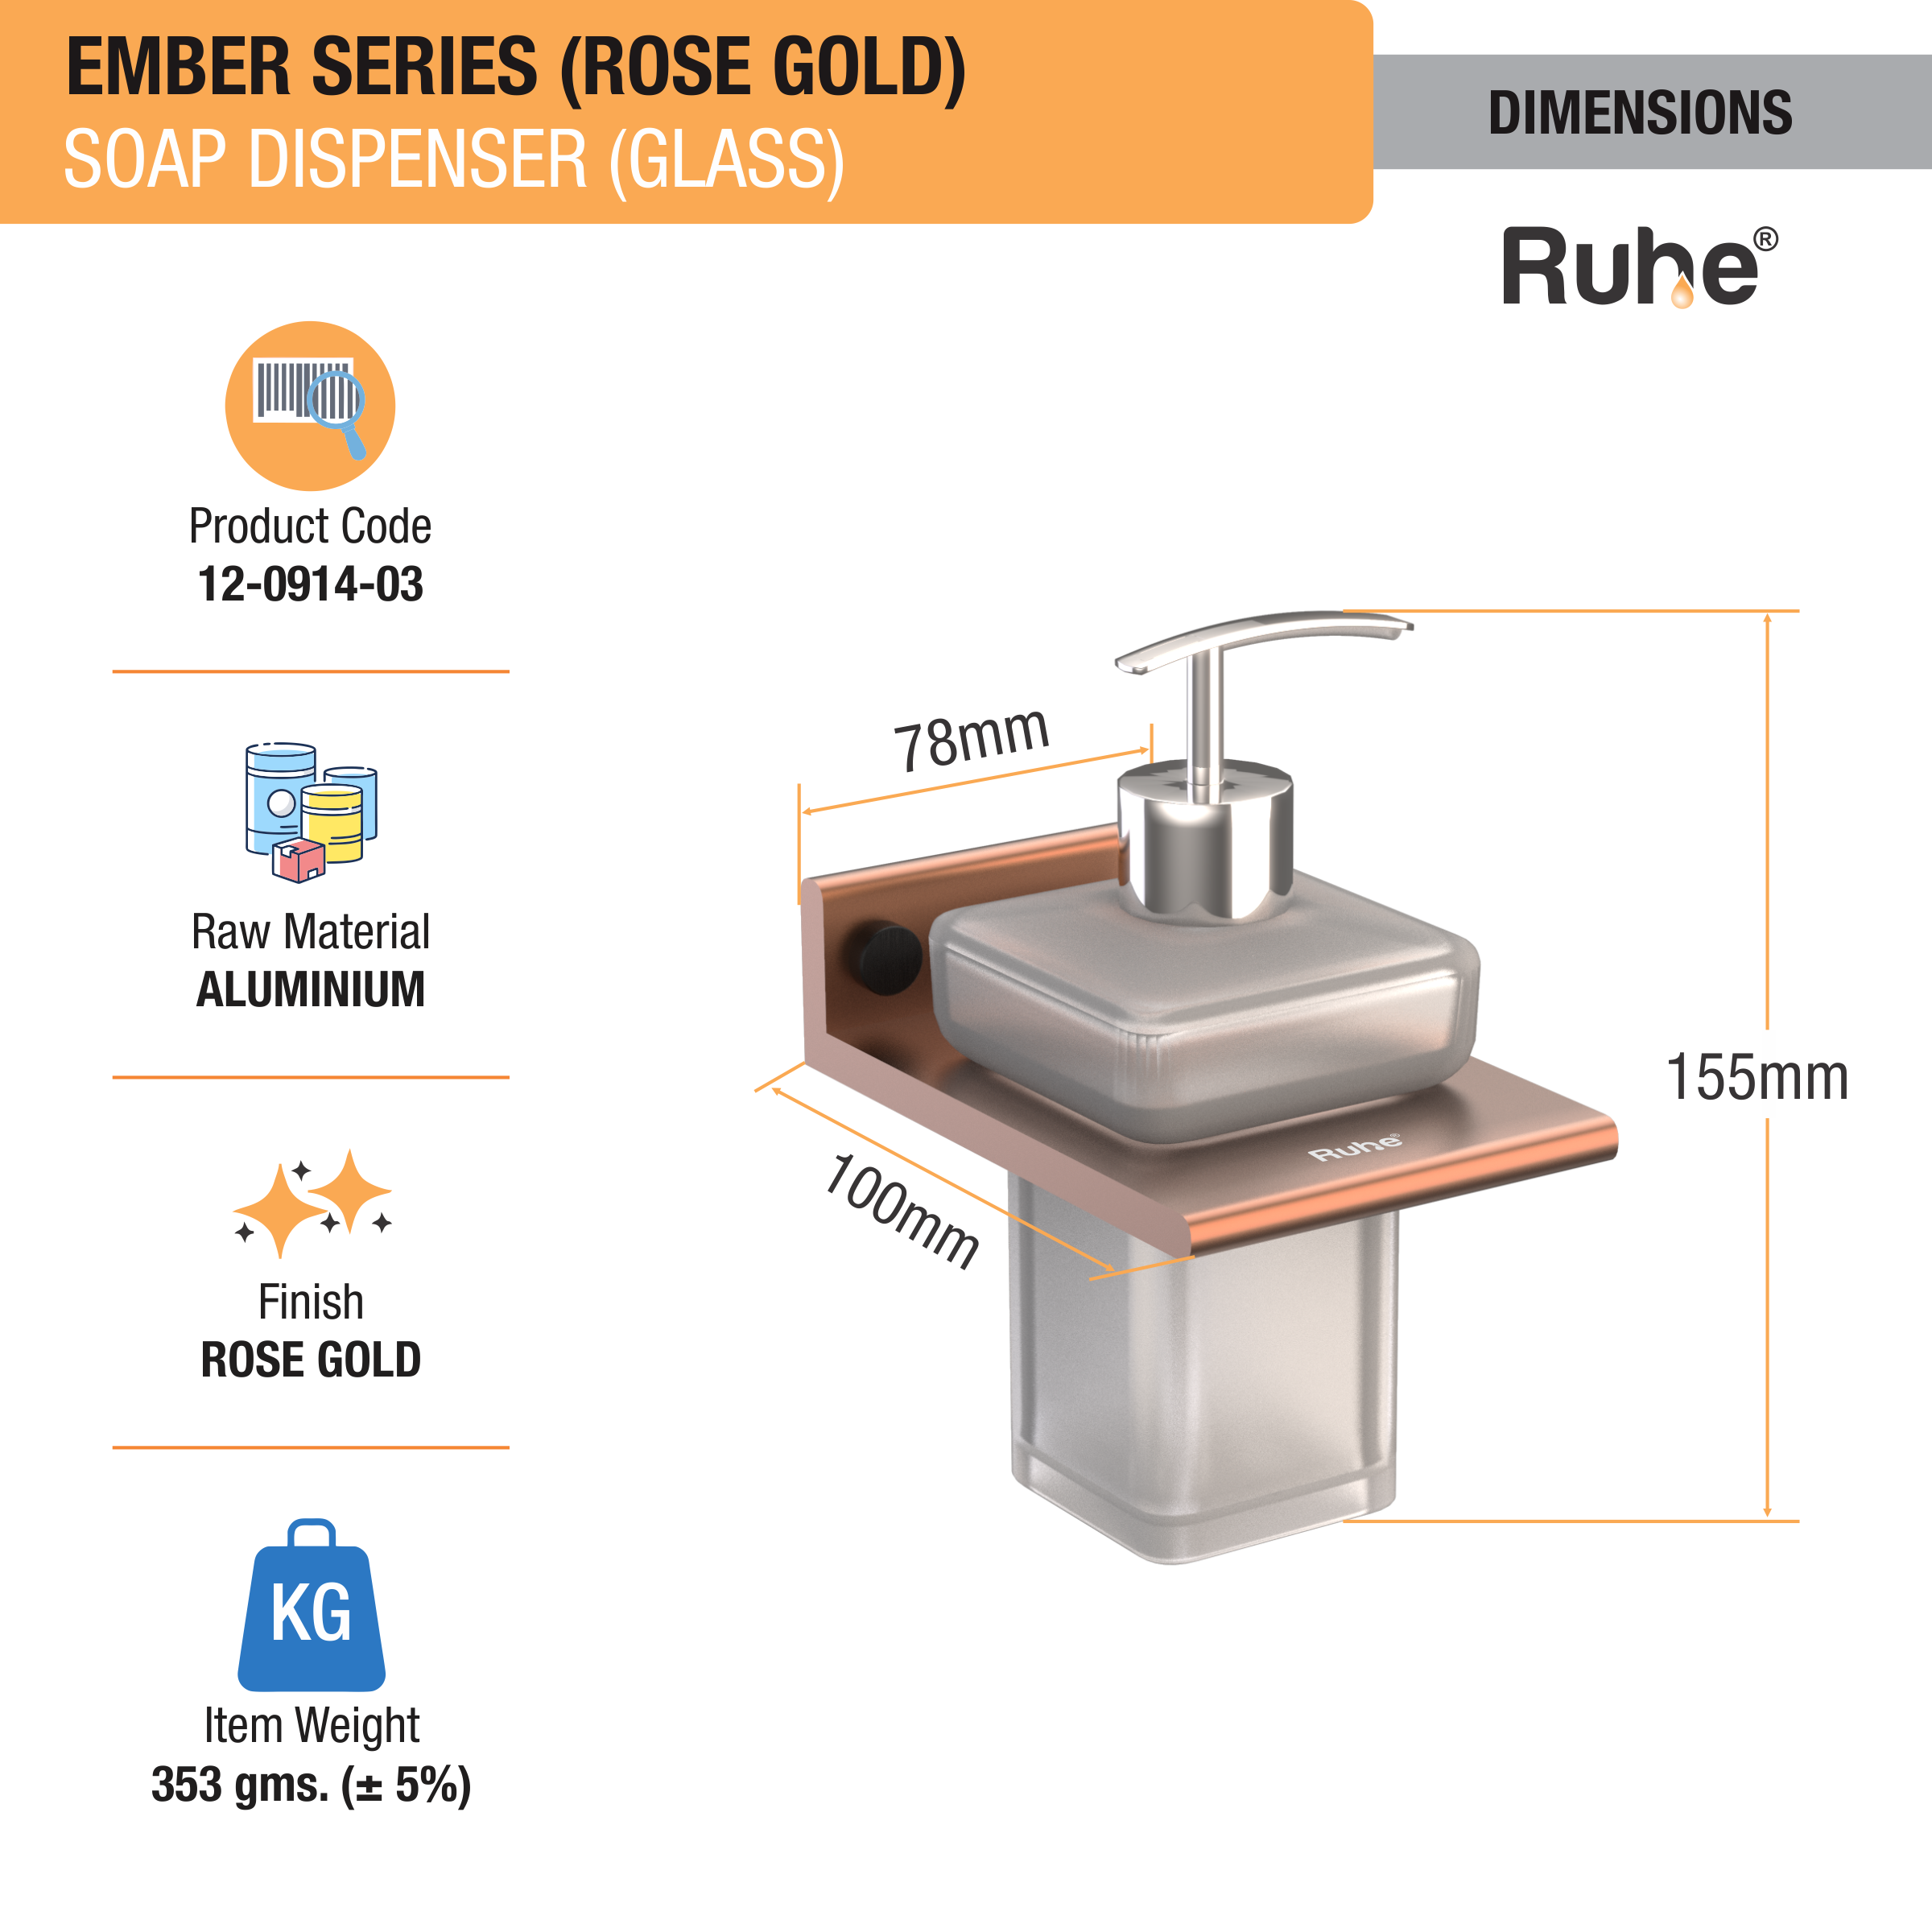 Ember Rose Gold Liquid Soap Dispenser (Space Aluminium) dimensions and sizes